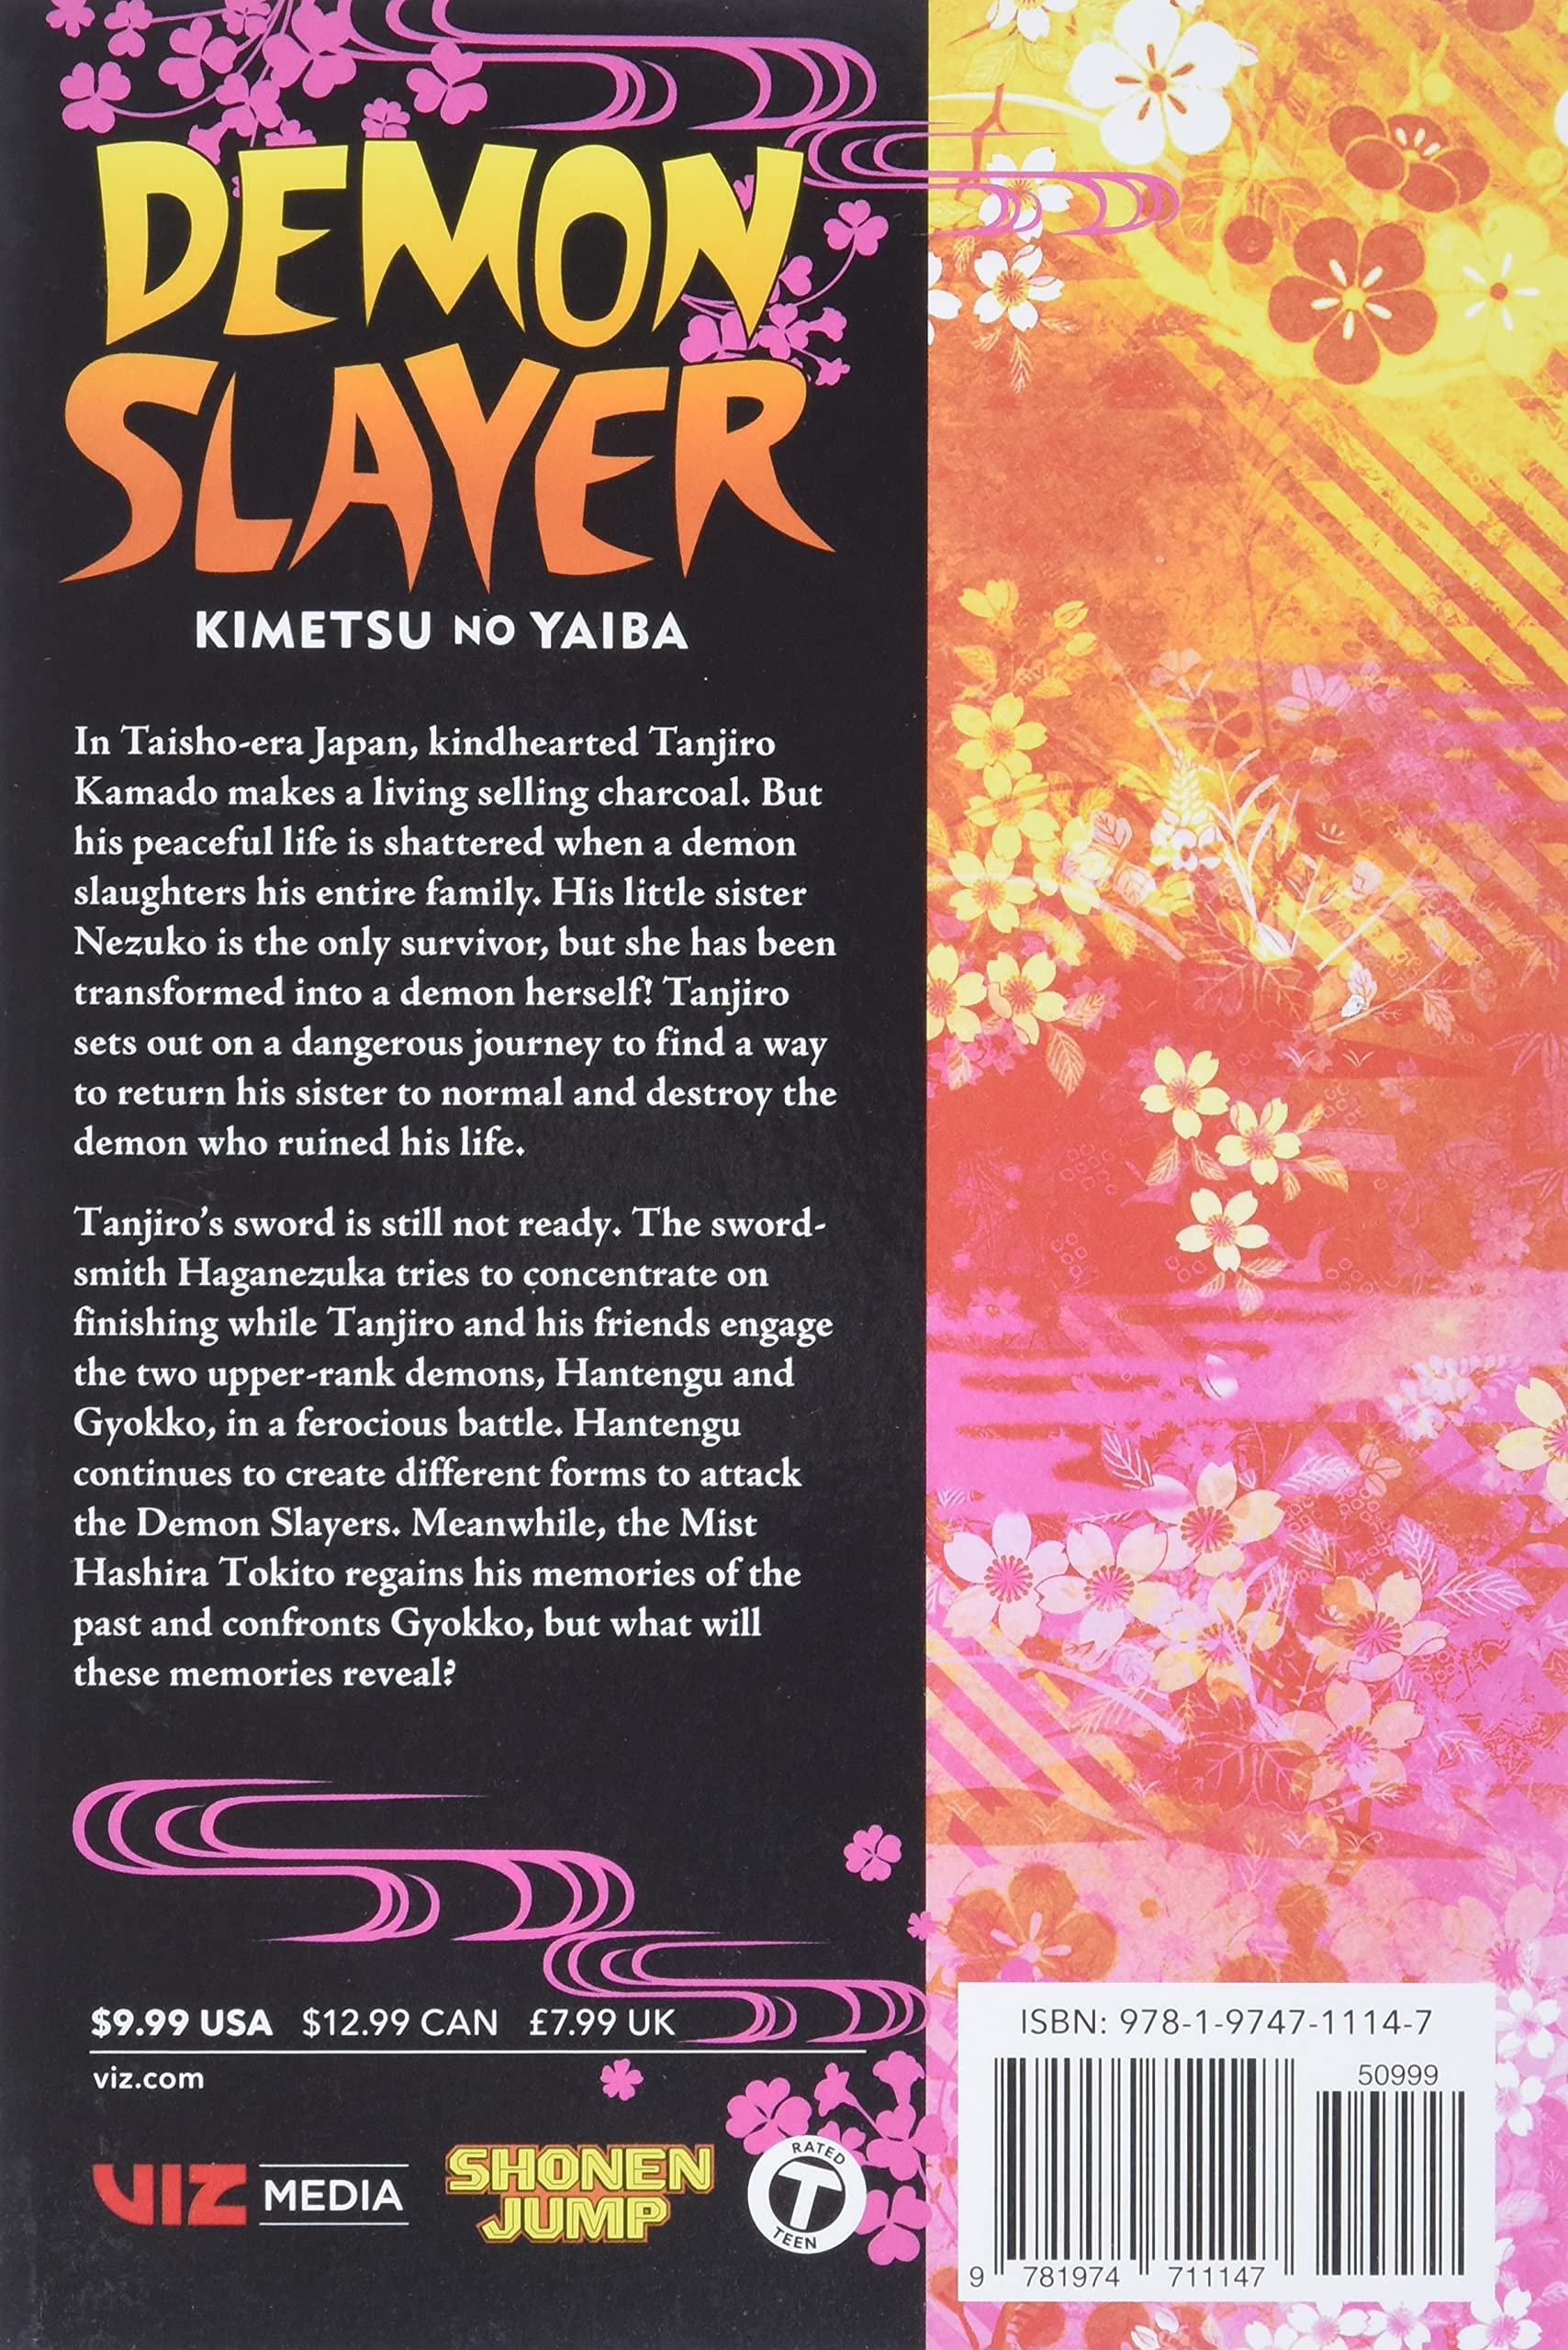 Demon Slayer: Kimetsu no Yaiba, Vol. 14